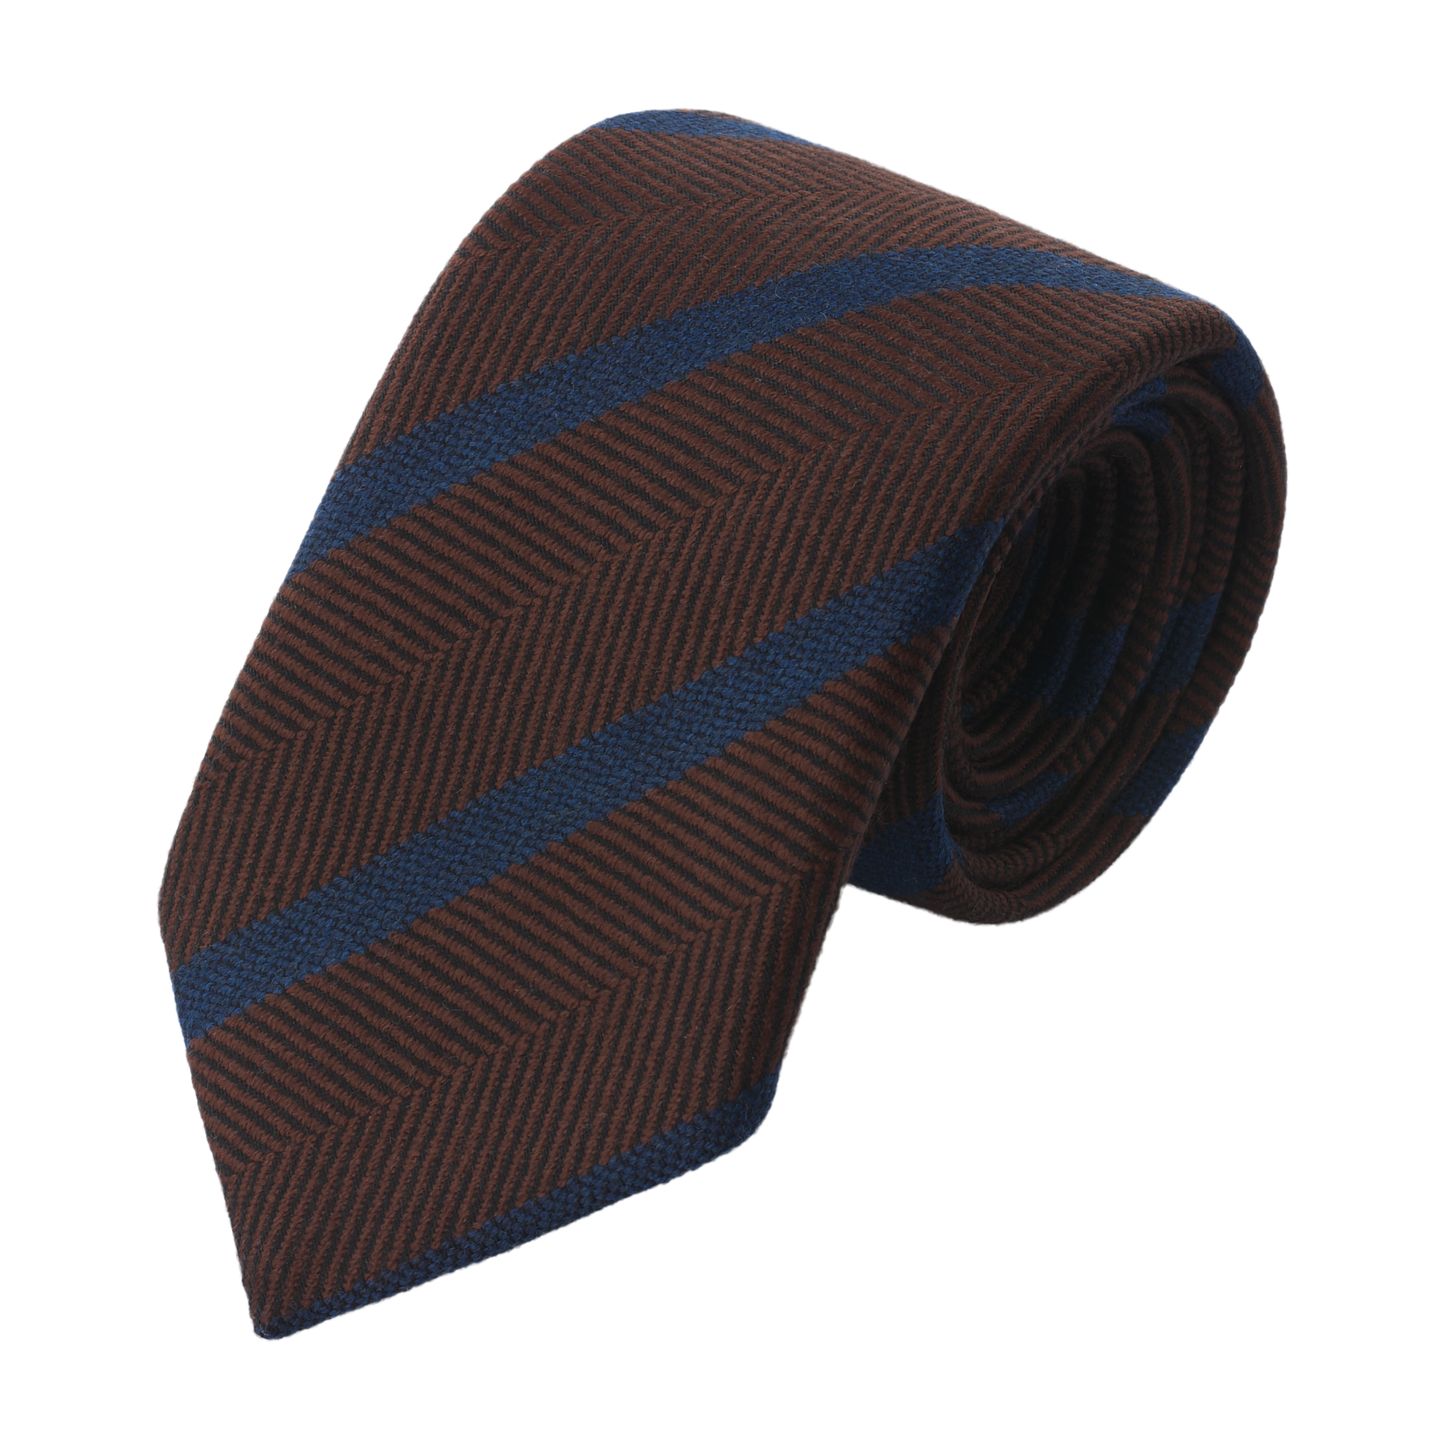 Regimental Herringbone Tie in Brown and Blue